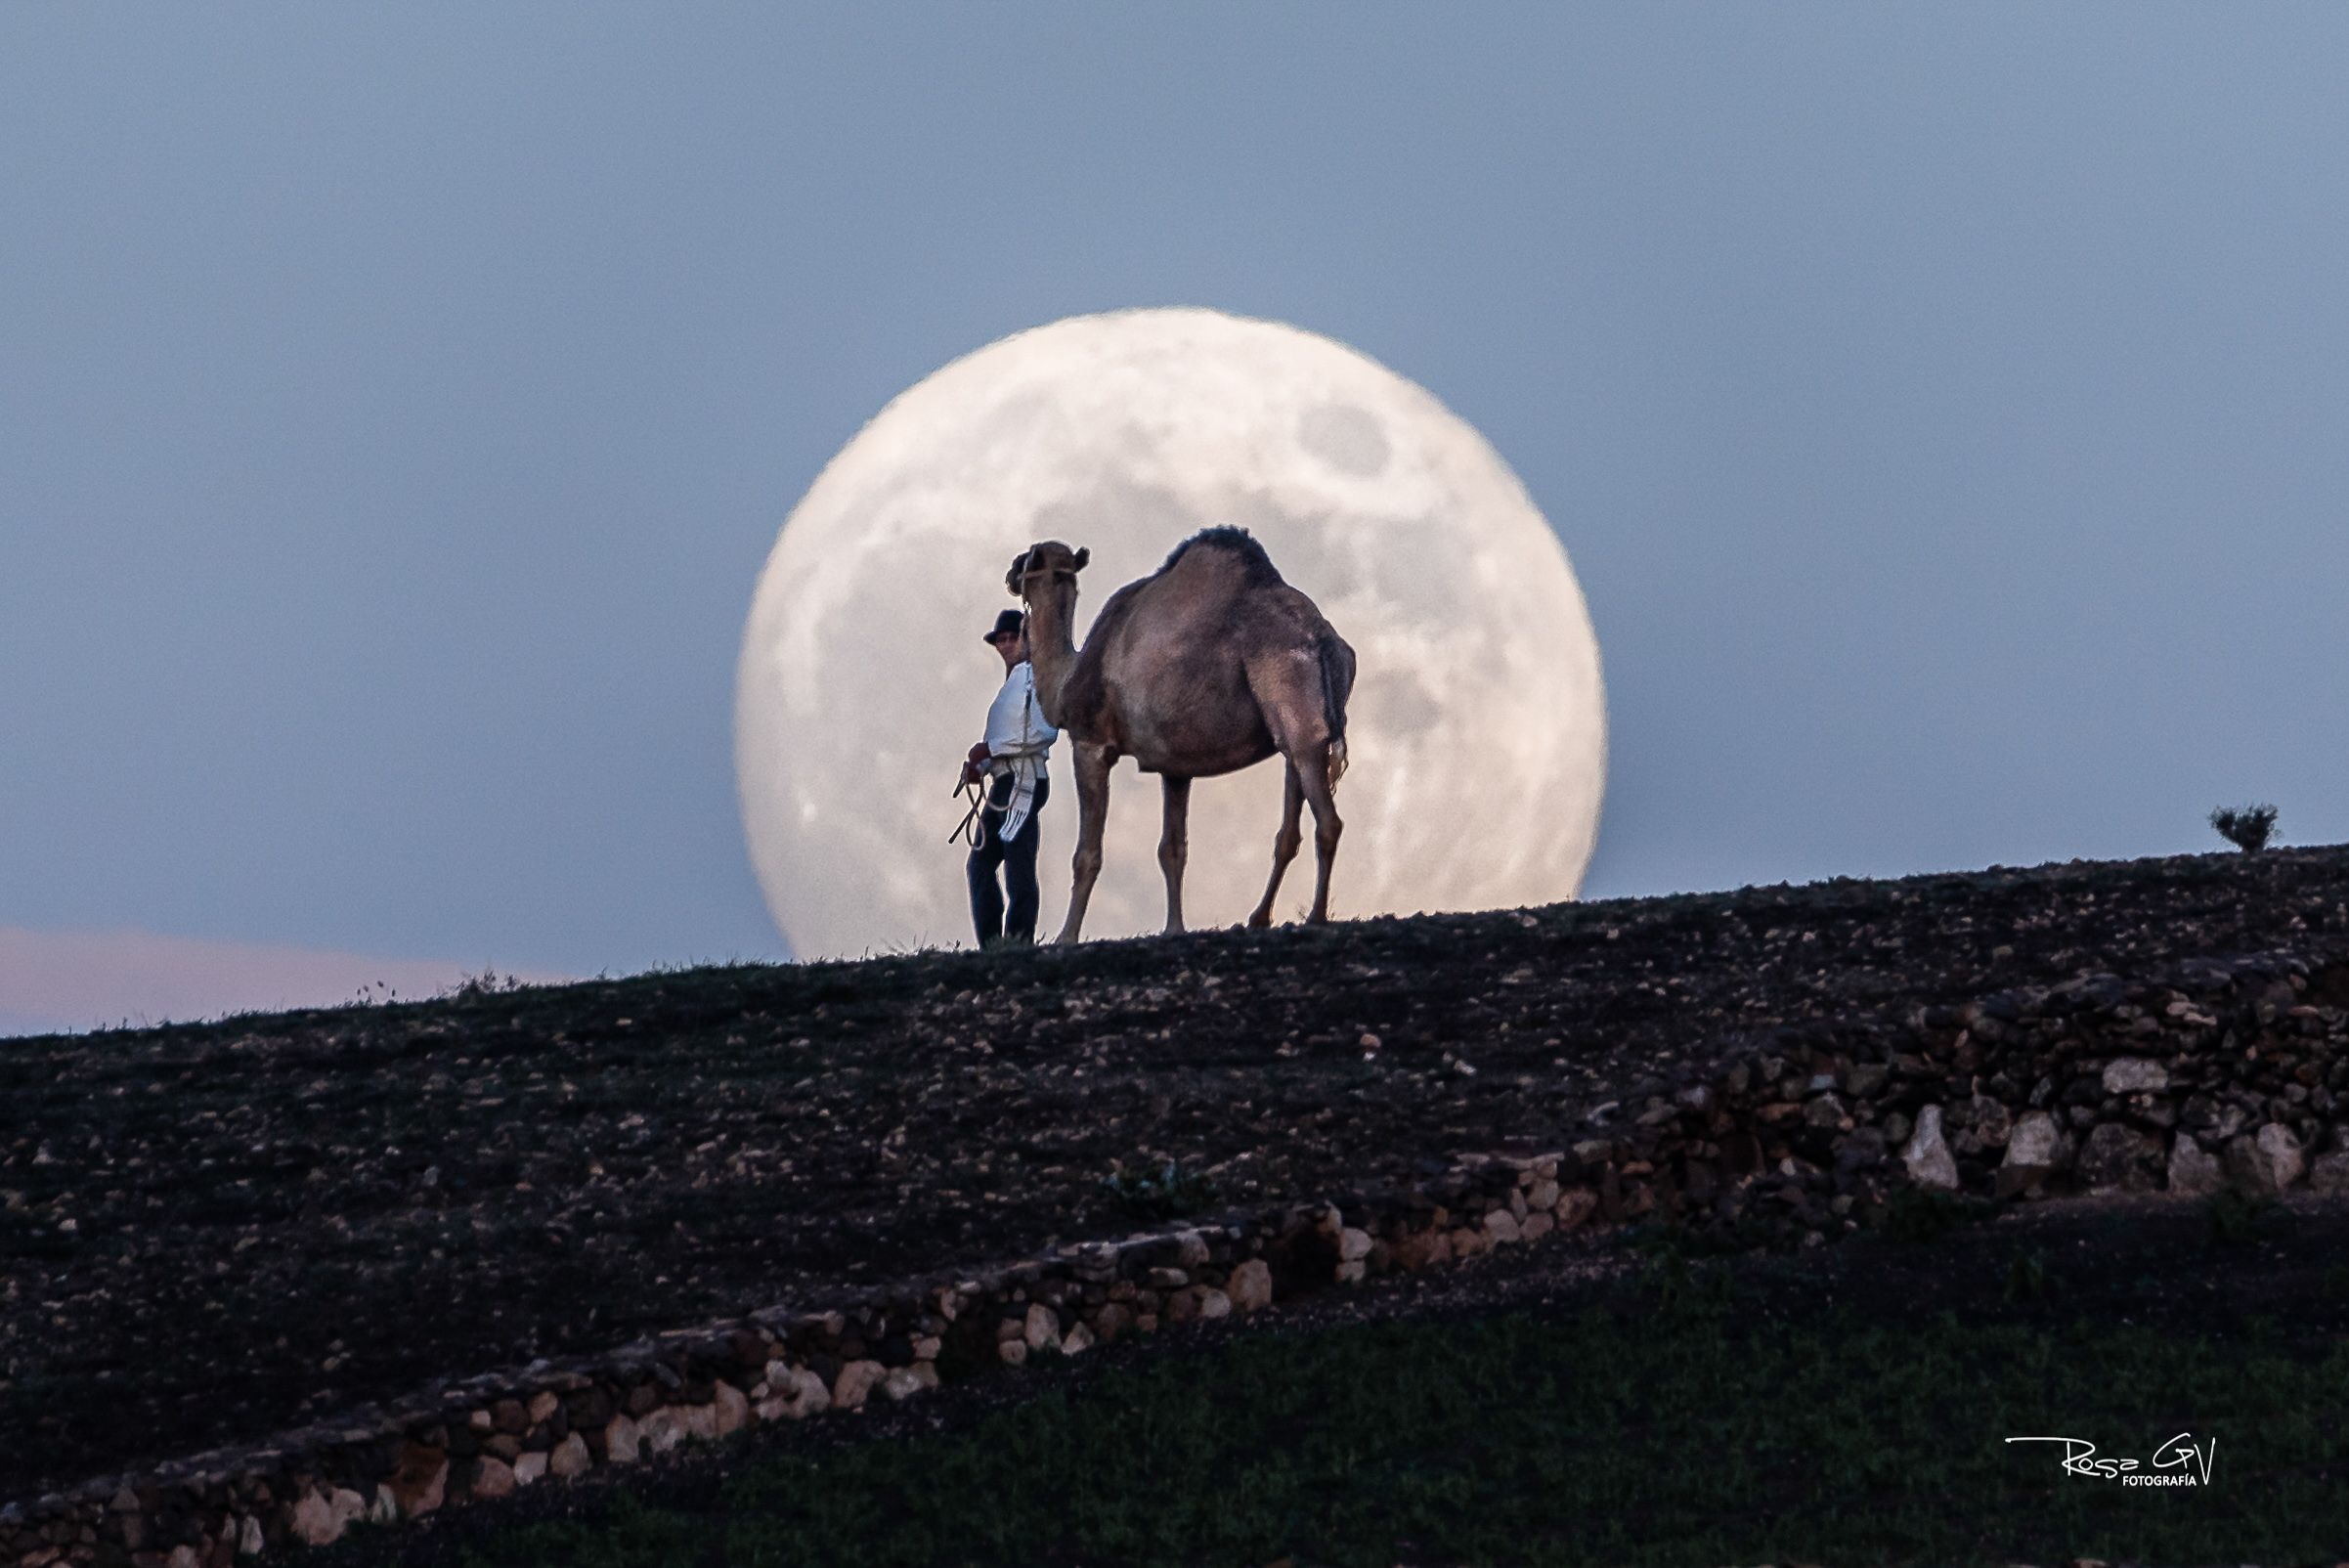 Fotografía del camello y la luna Autora: Rosa